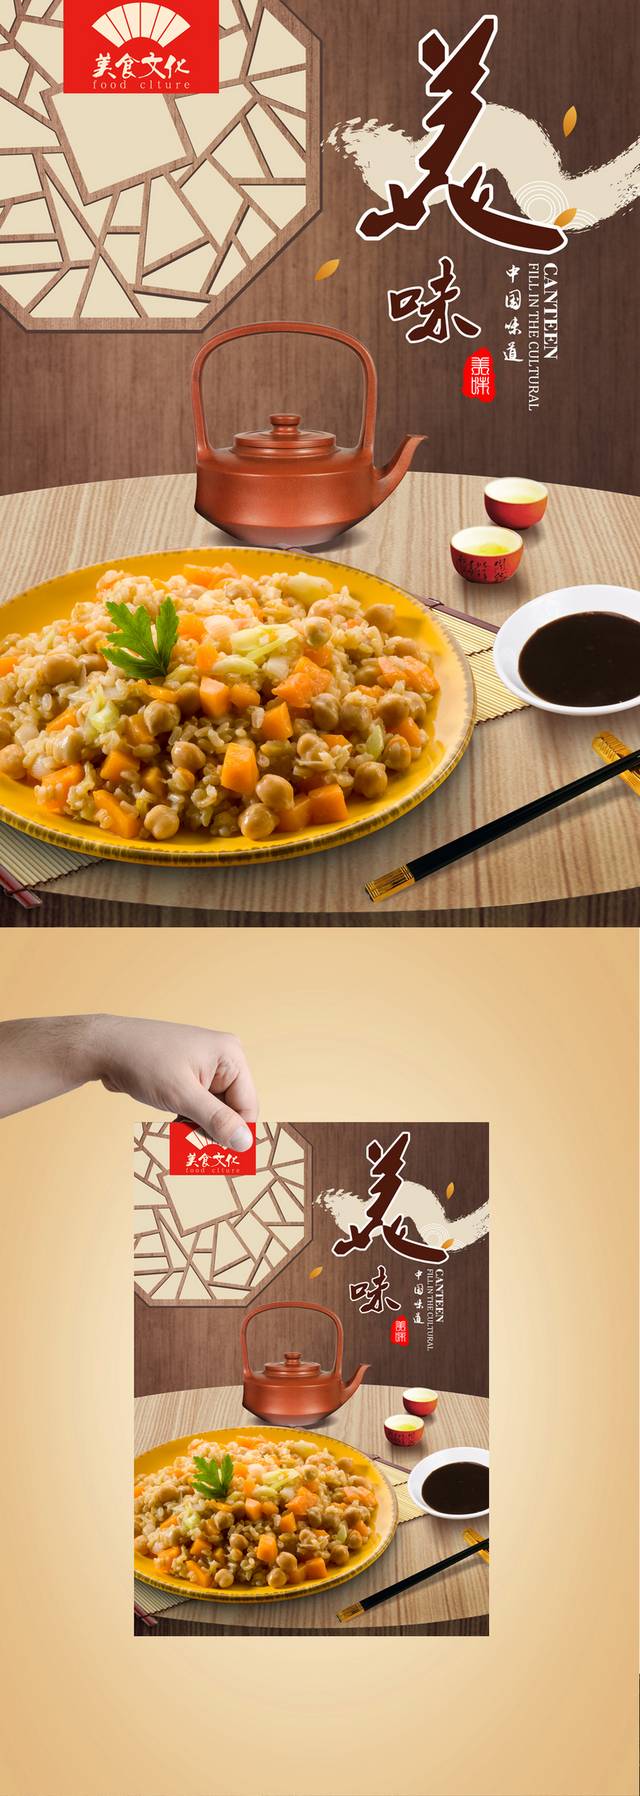 炒饭宣传海报设计高清